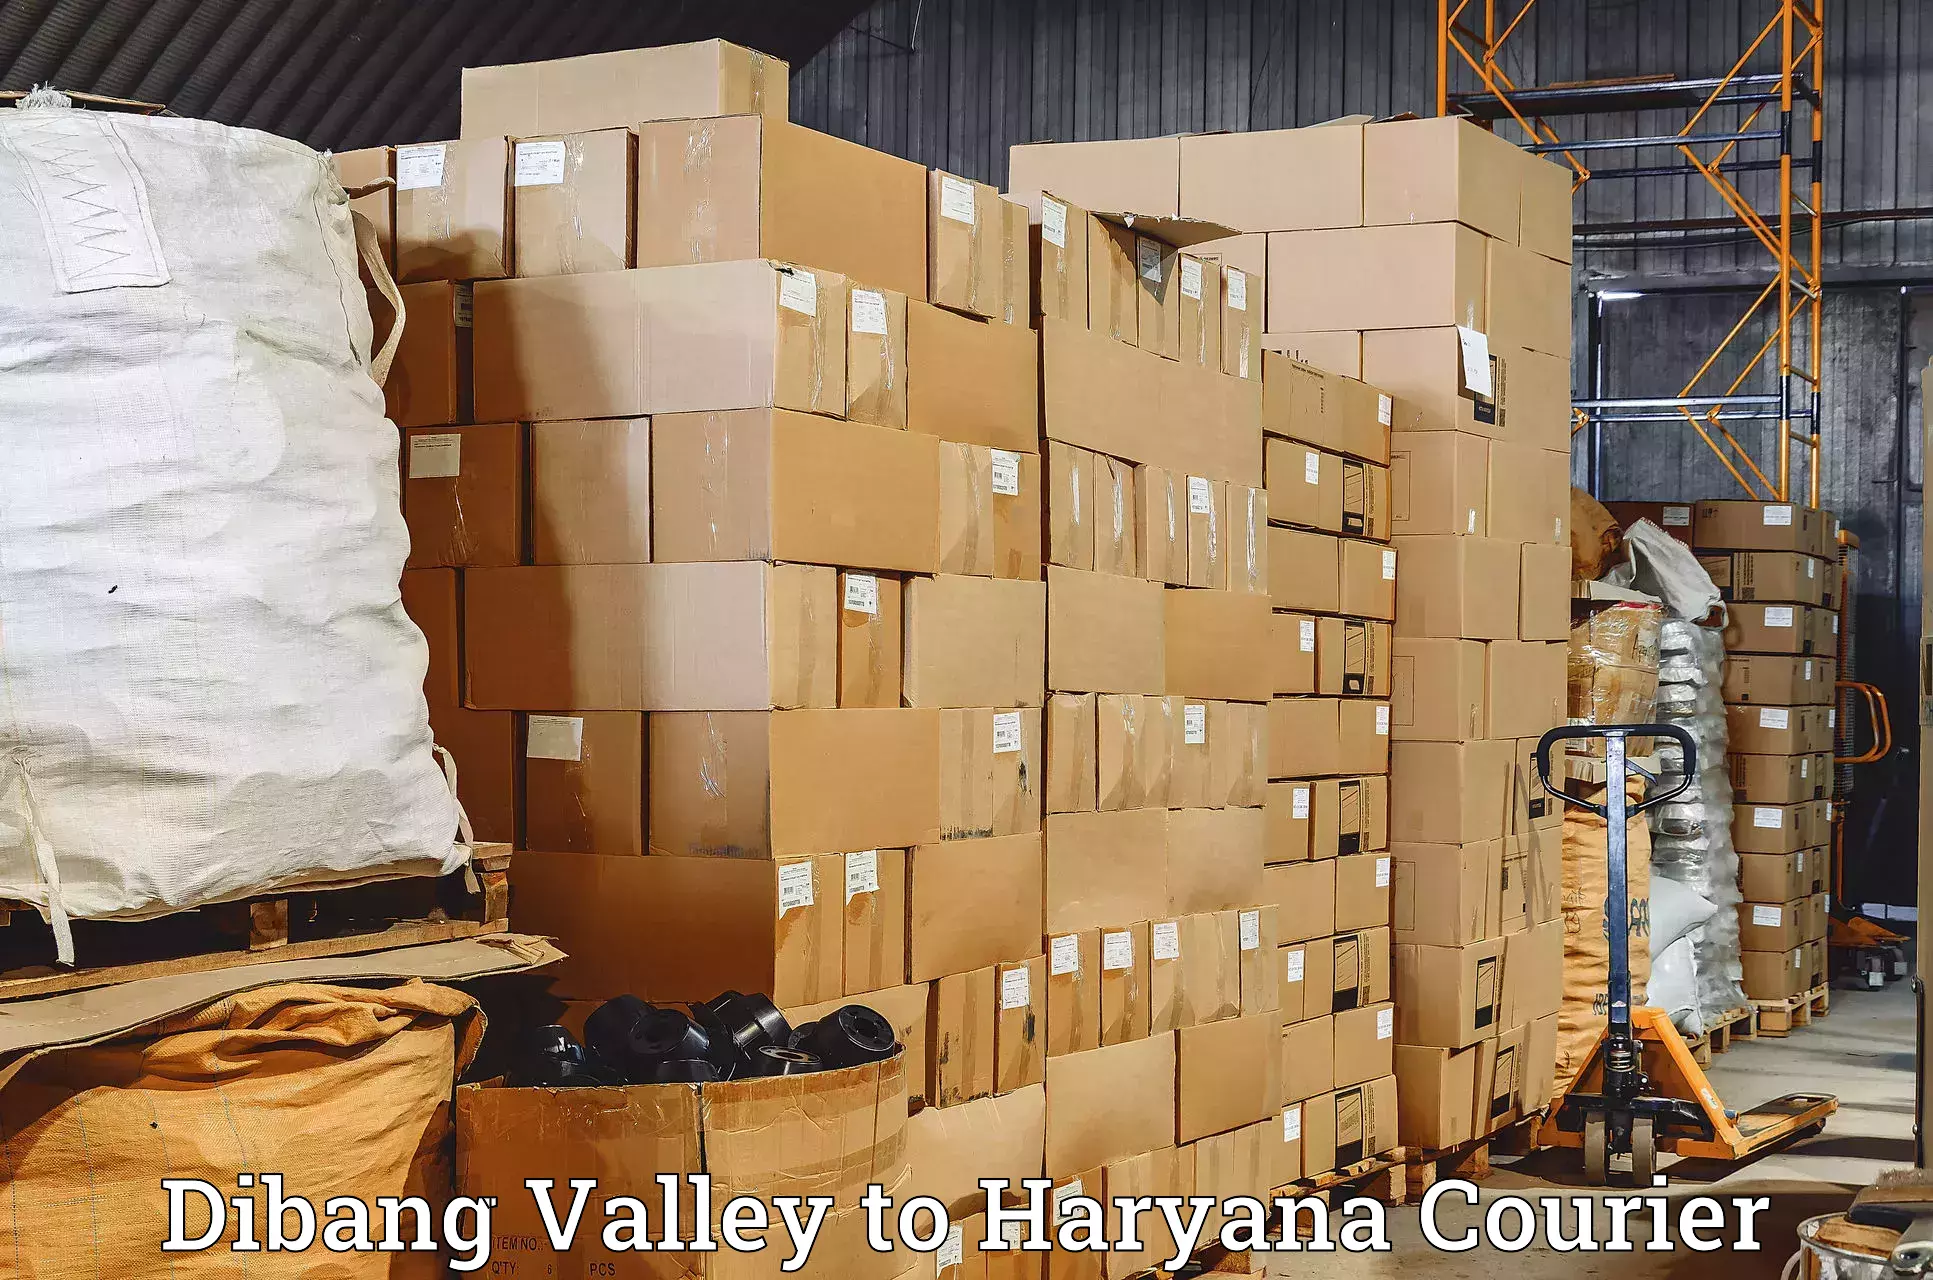 Global shipping solutions Dibang Valley to Gohana